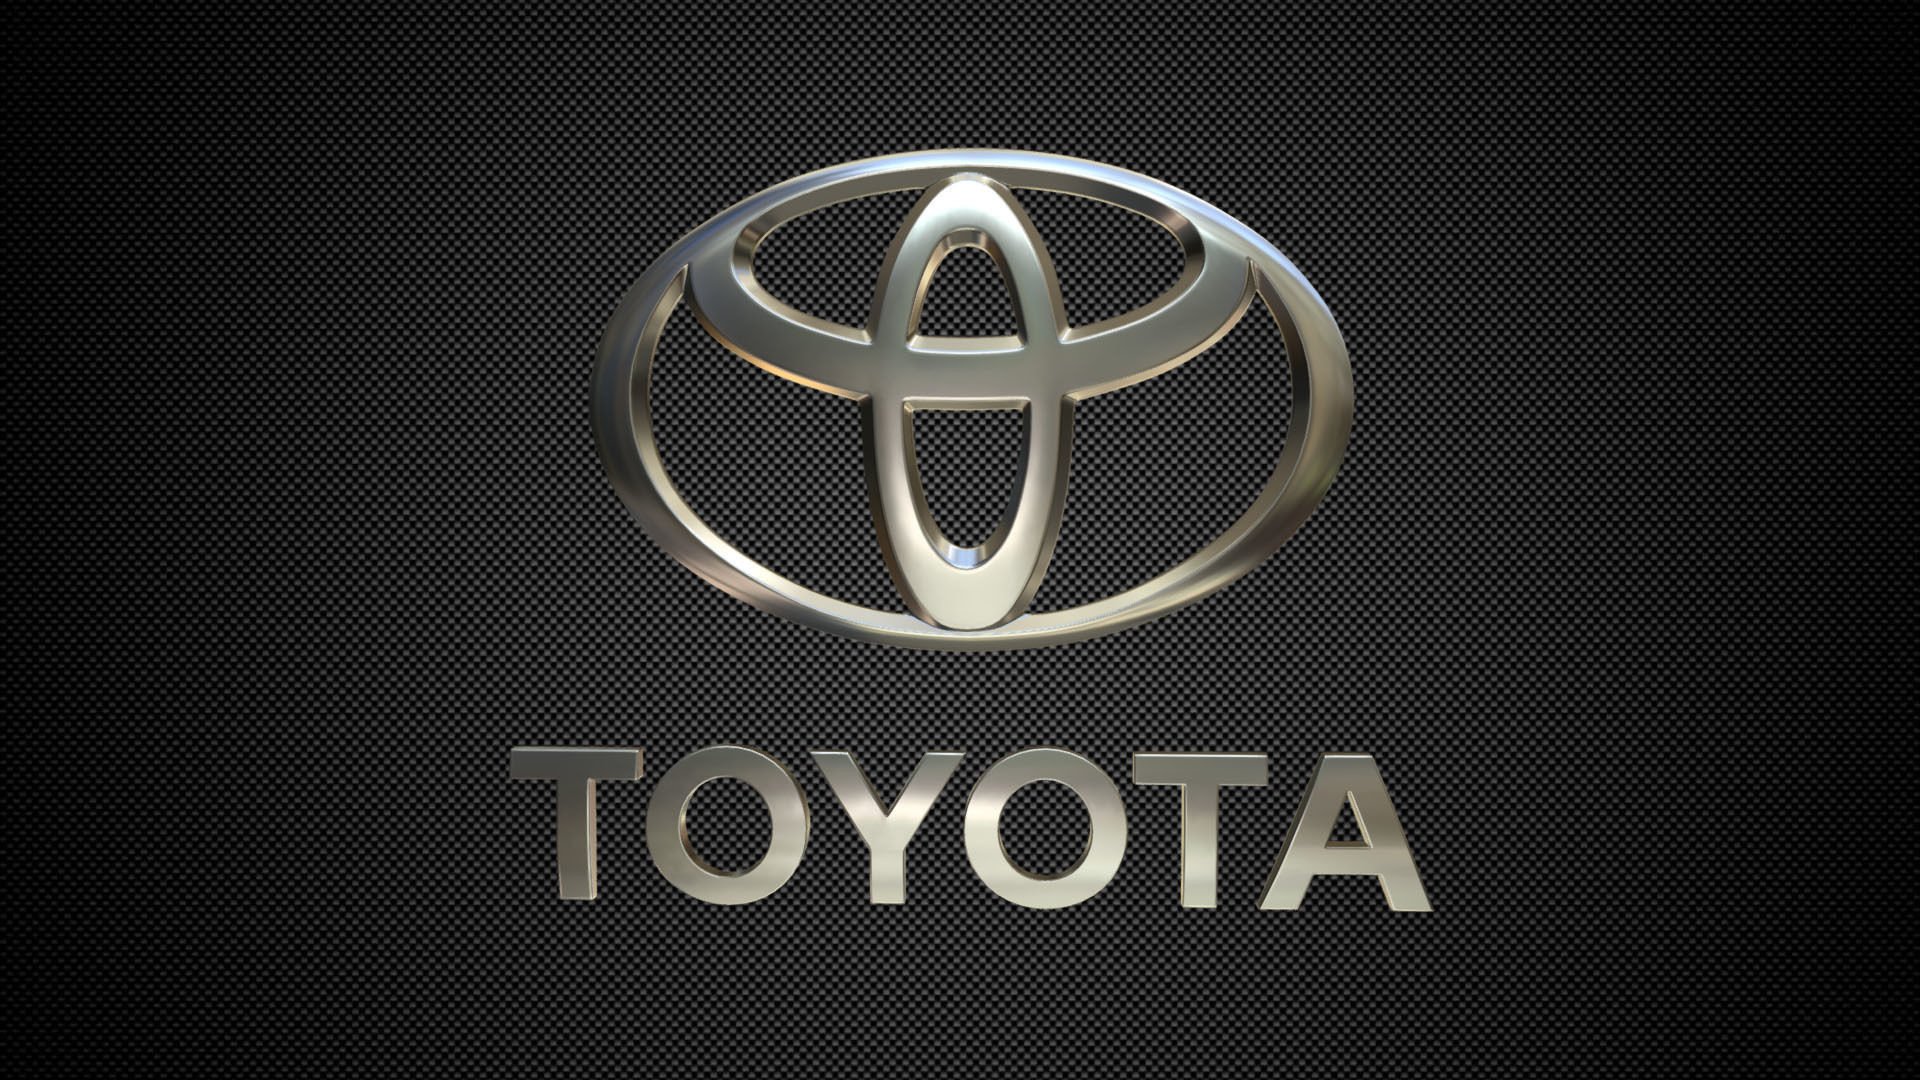 Toyota логотип